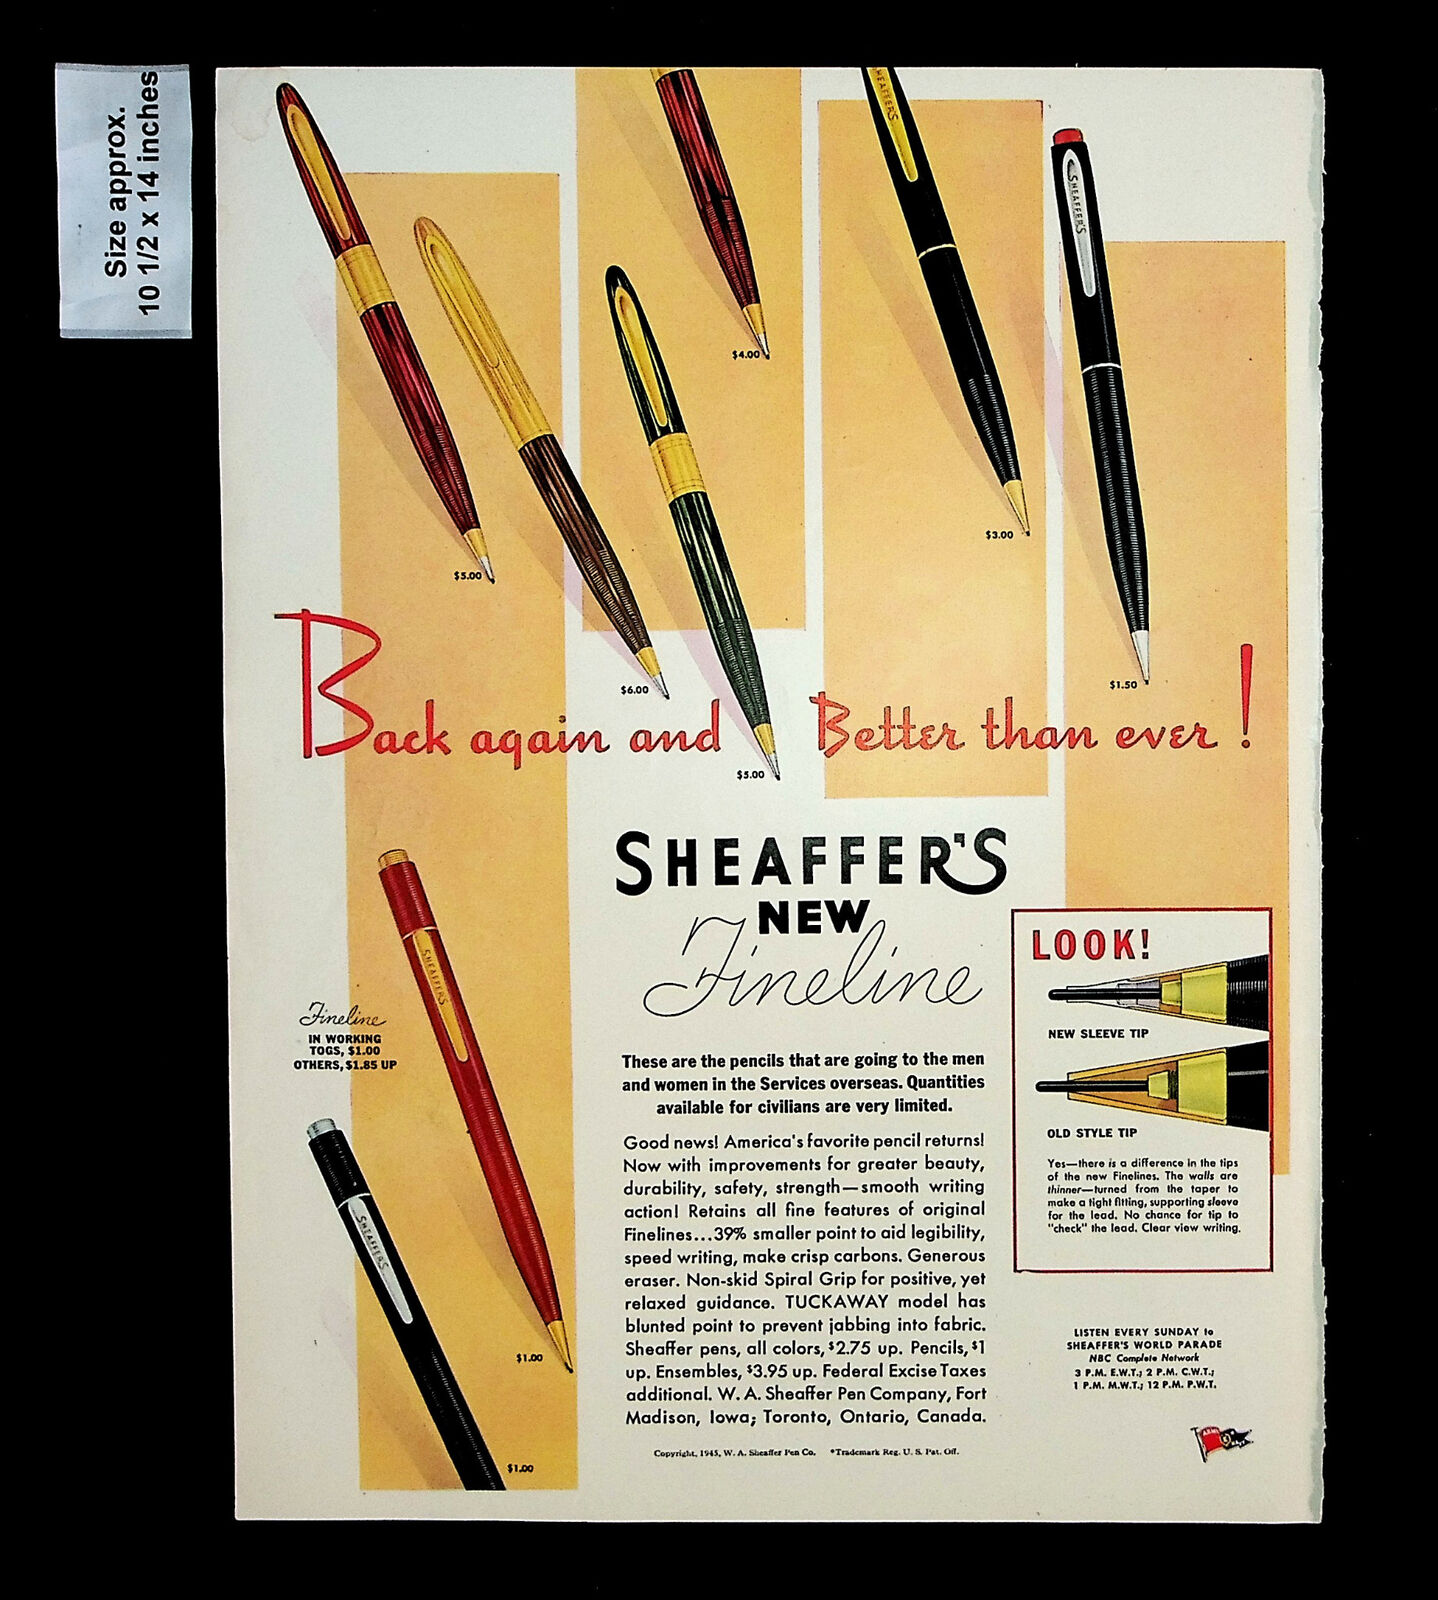 1945 Sheaffer\'s New Fineline Pen Pencils Tuckaway Model Vintage Print Ad 34127